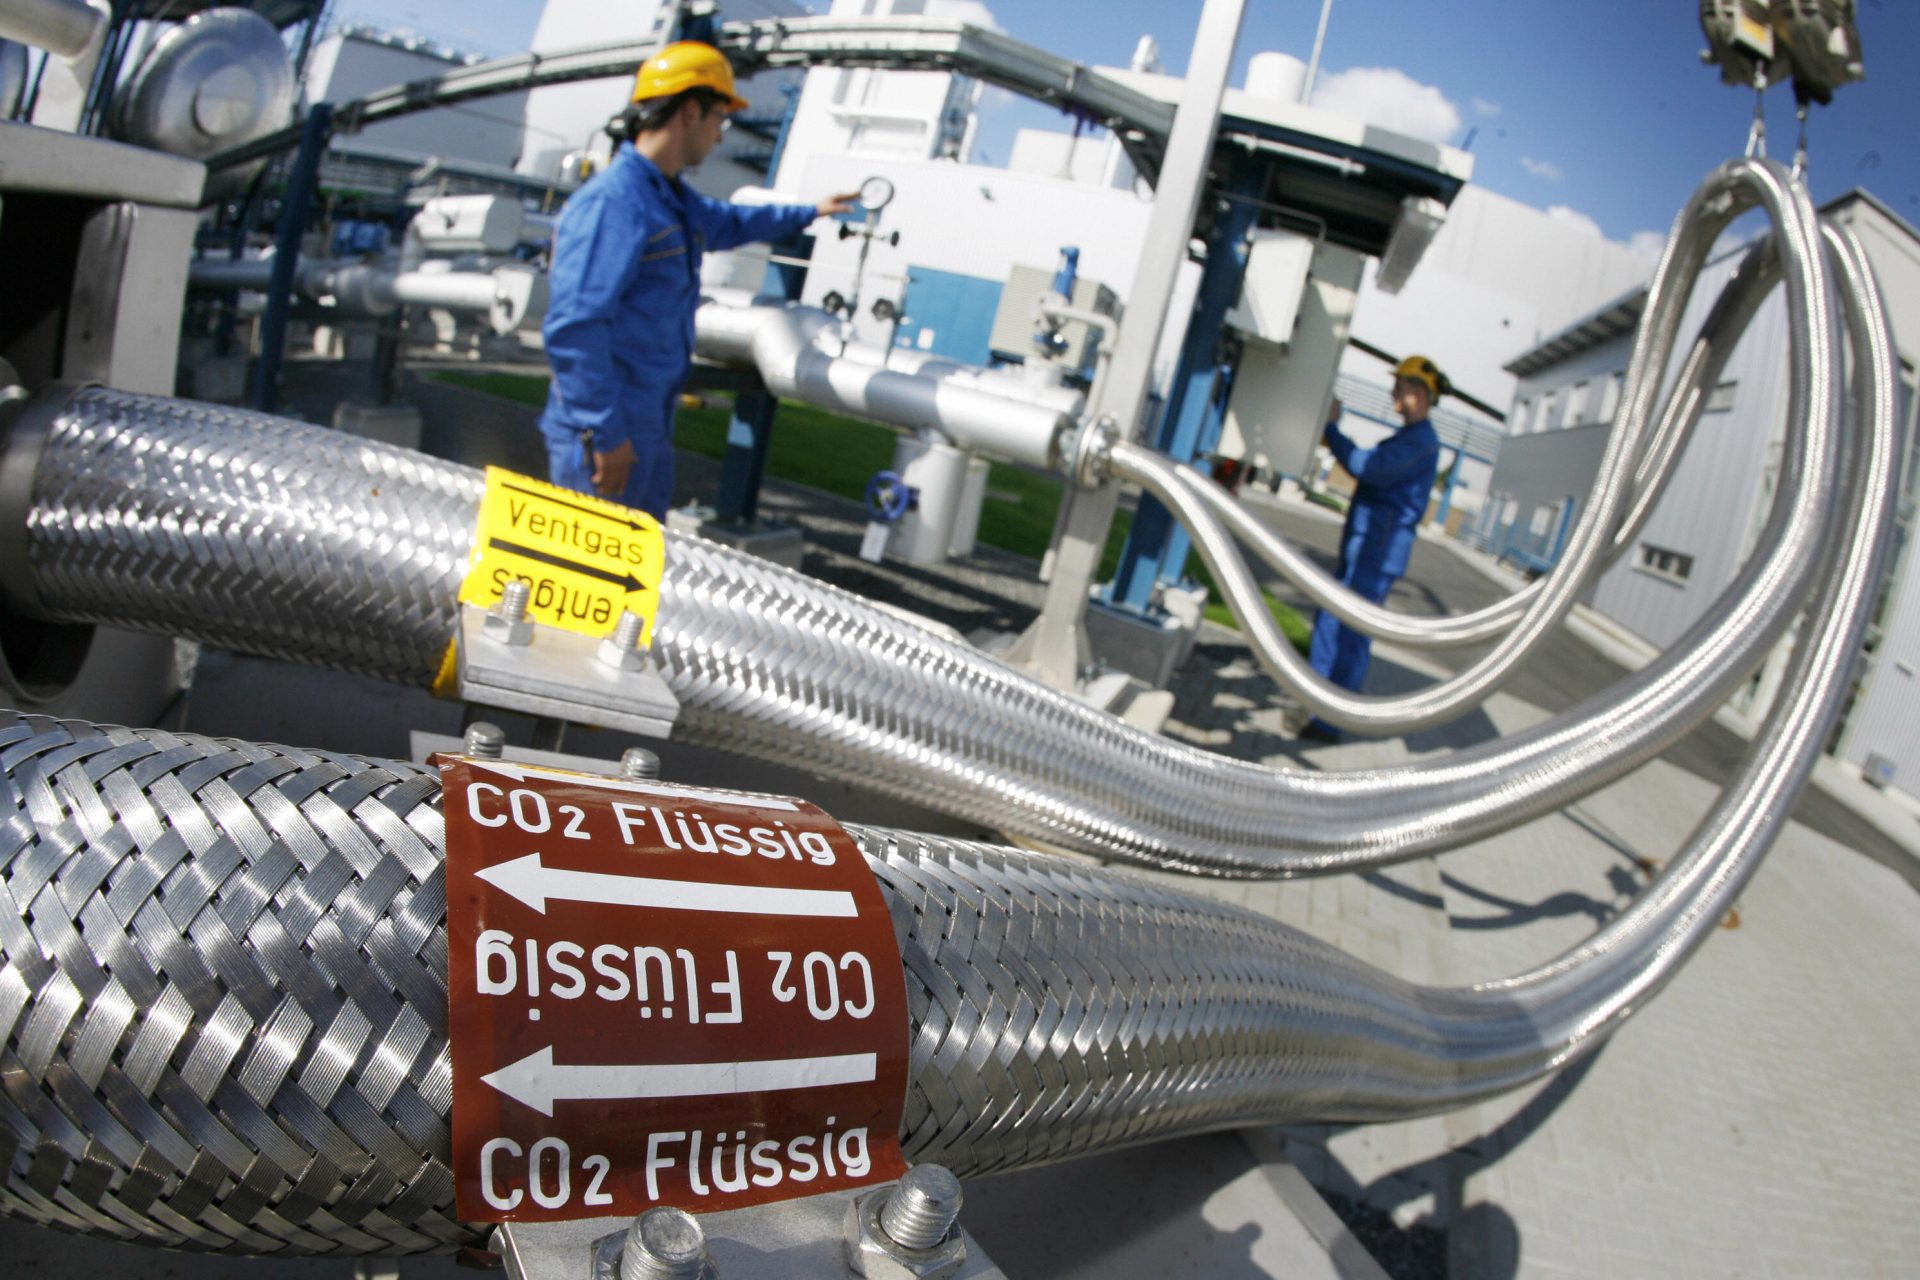 Kohlenstoffabscheidung und -speicherung: Ineffizient, außer in der Nähe von Fabriken mit hohen CO2-Konzentrationen